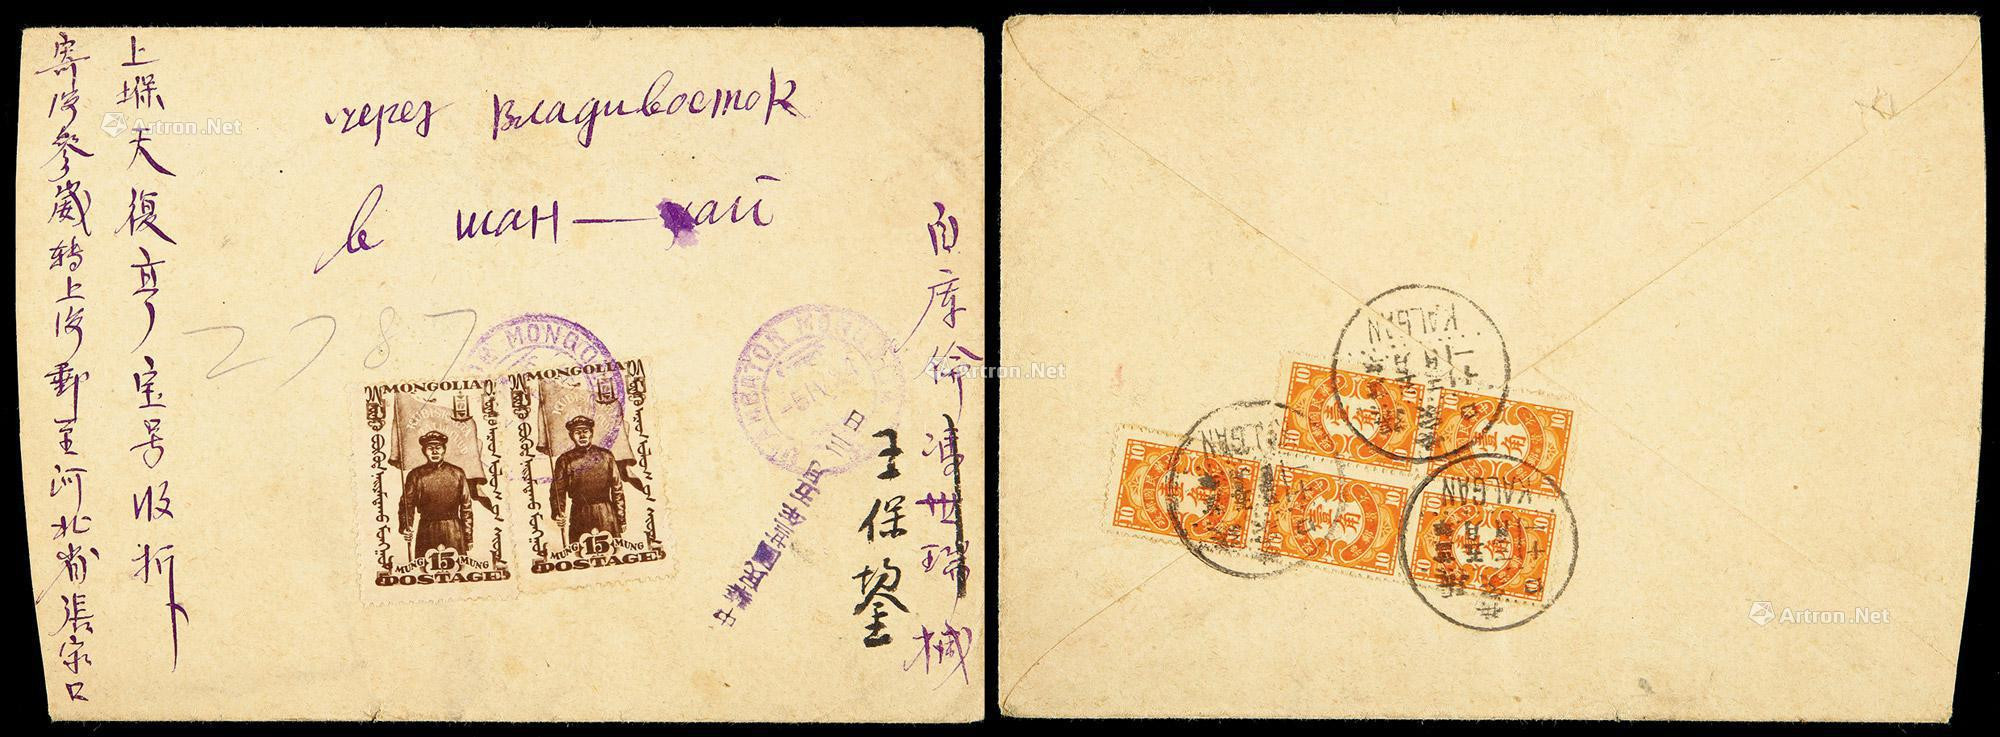 1934年库伦寄张家口欠资封，贴蒙古纪念邮票15蒙戈两枚